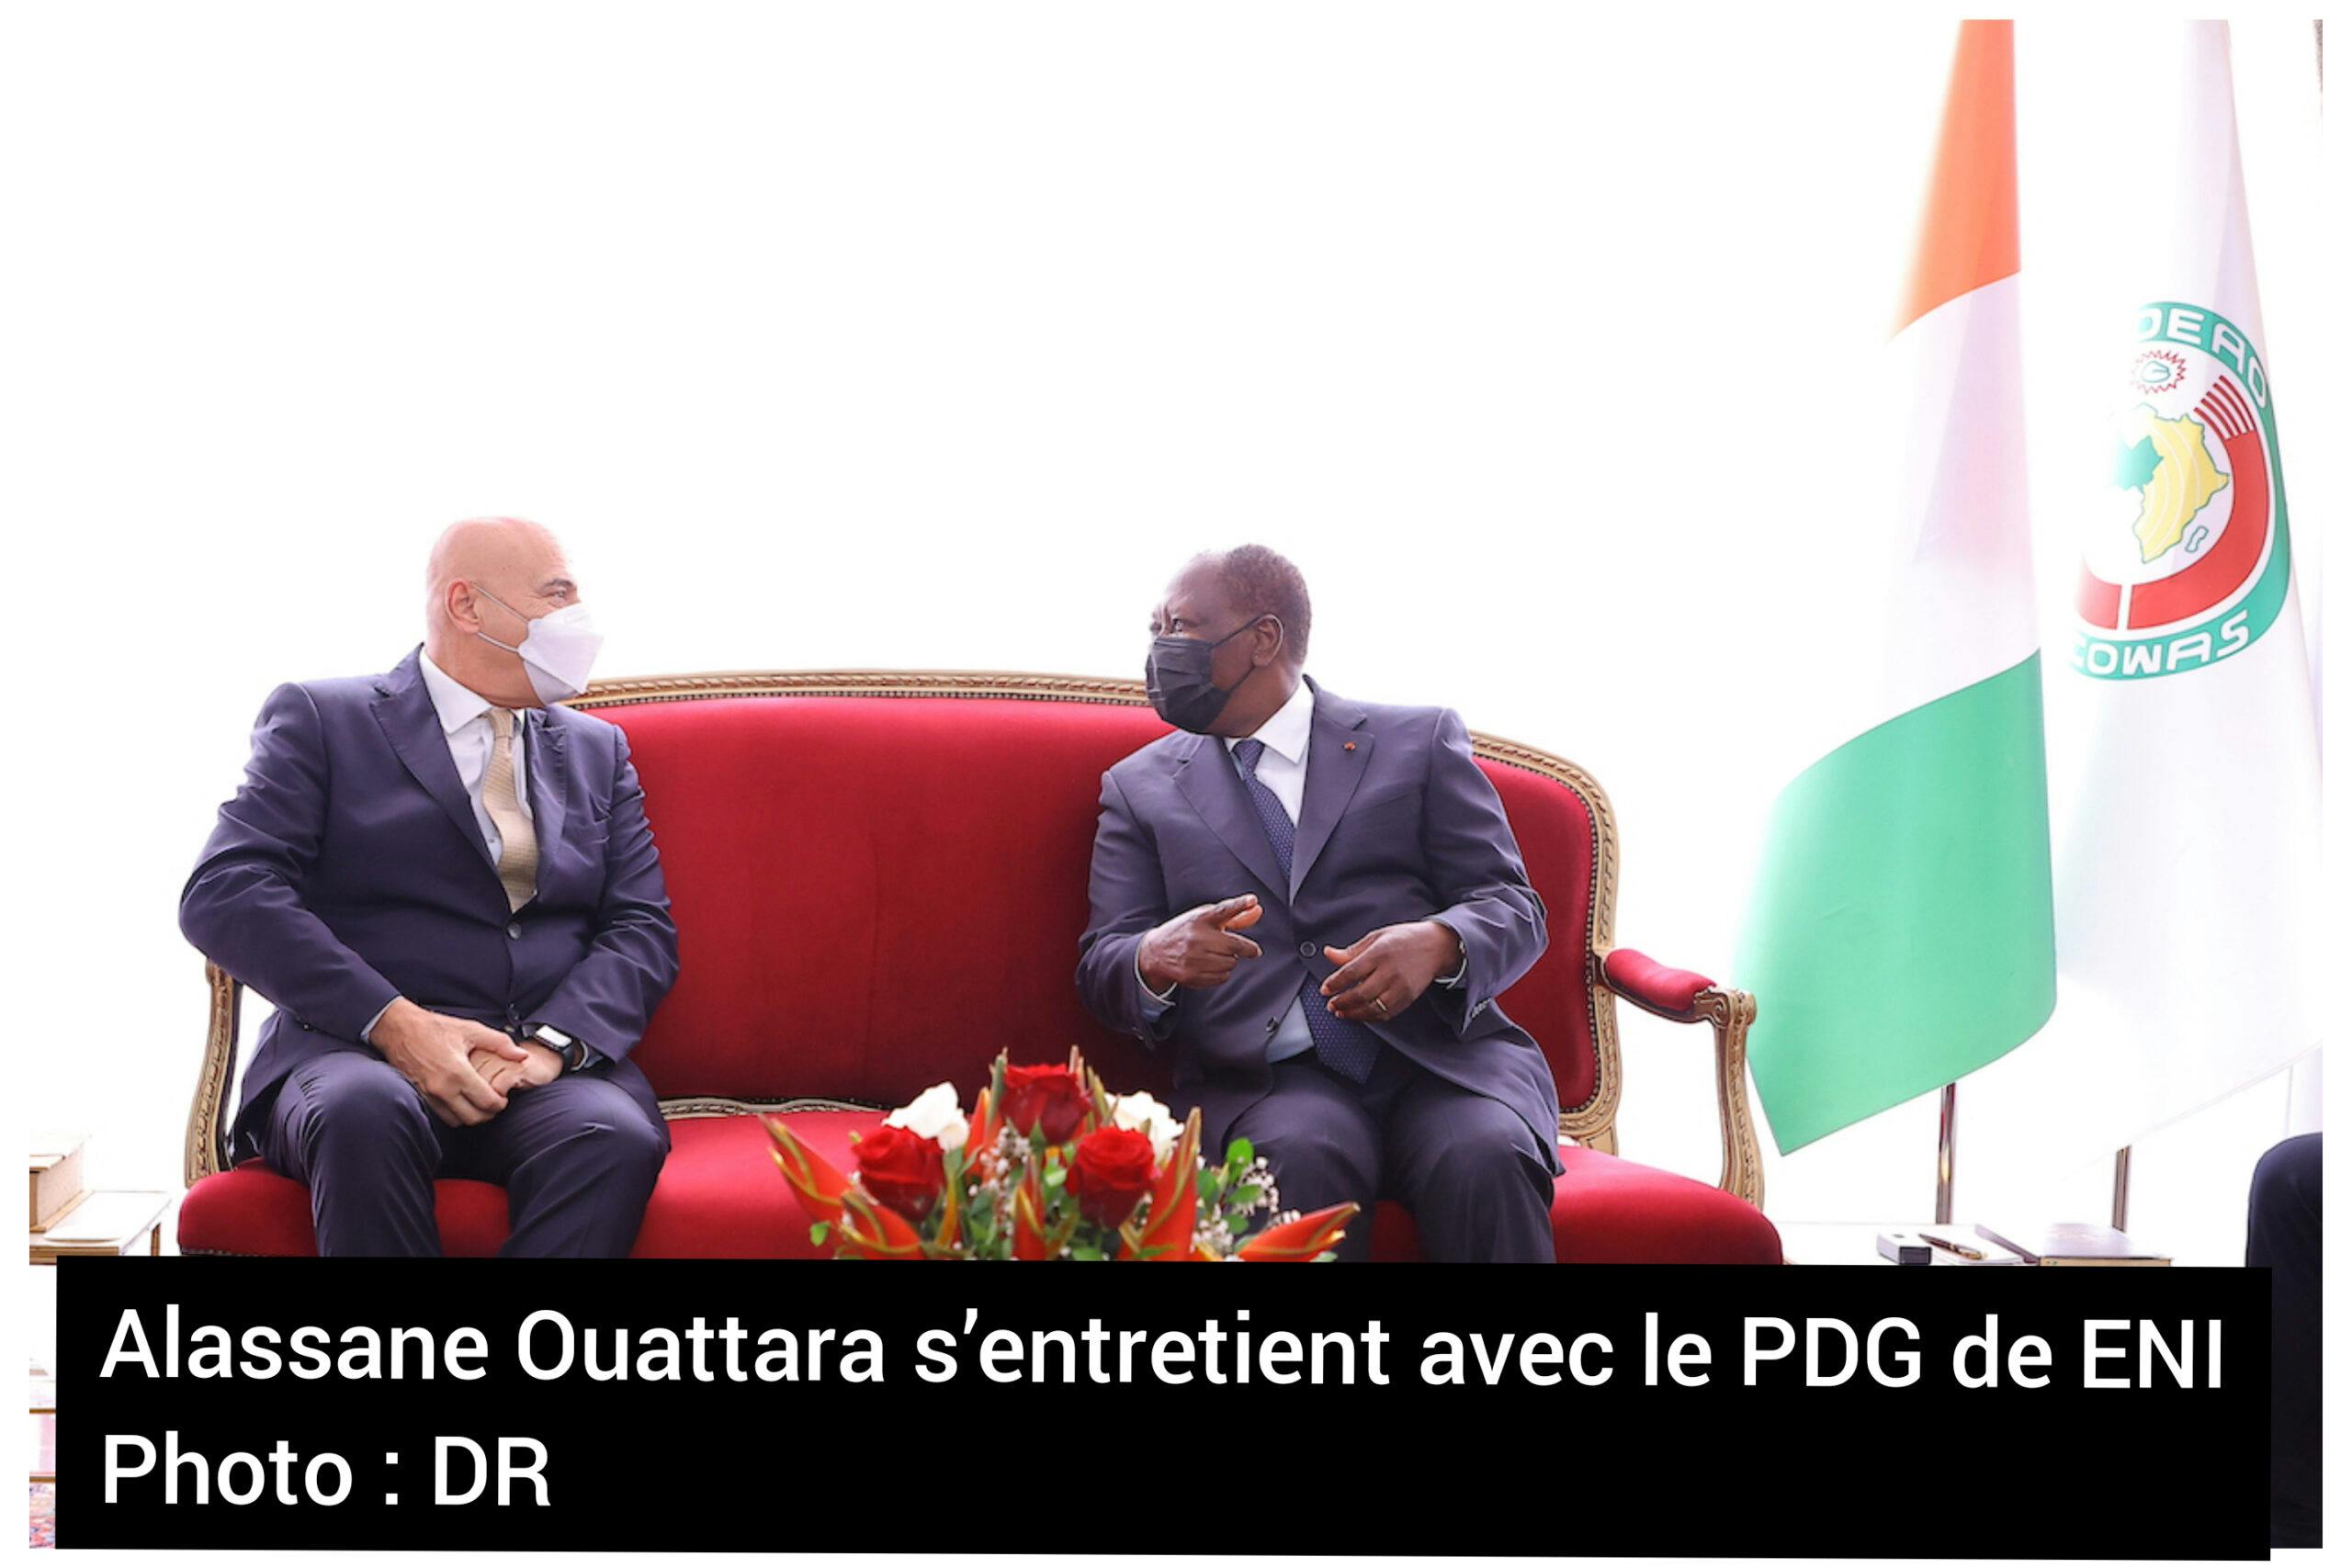 Hydrocarbures en Côte d’Ivoire : Alassane Ouattara s’entretient avec le PDG de ENI